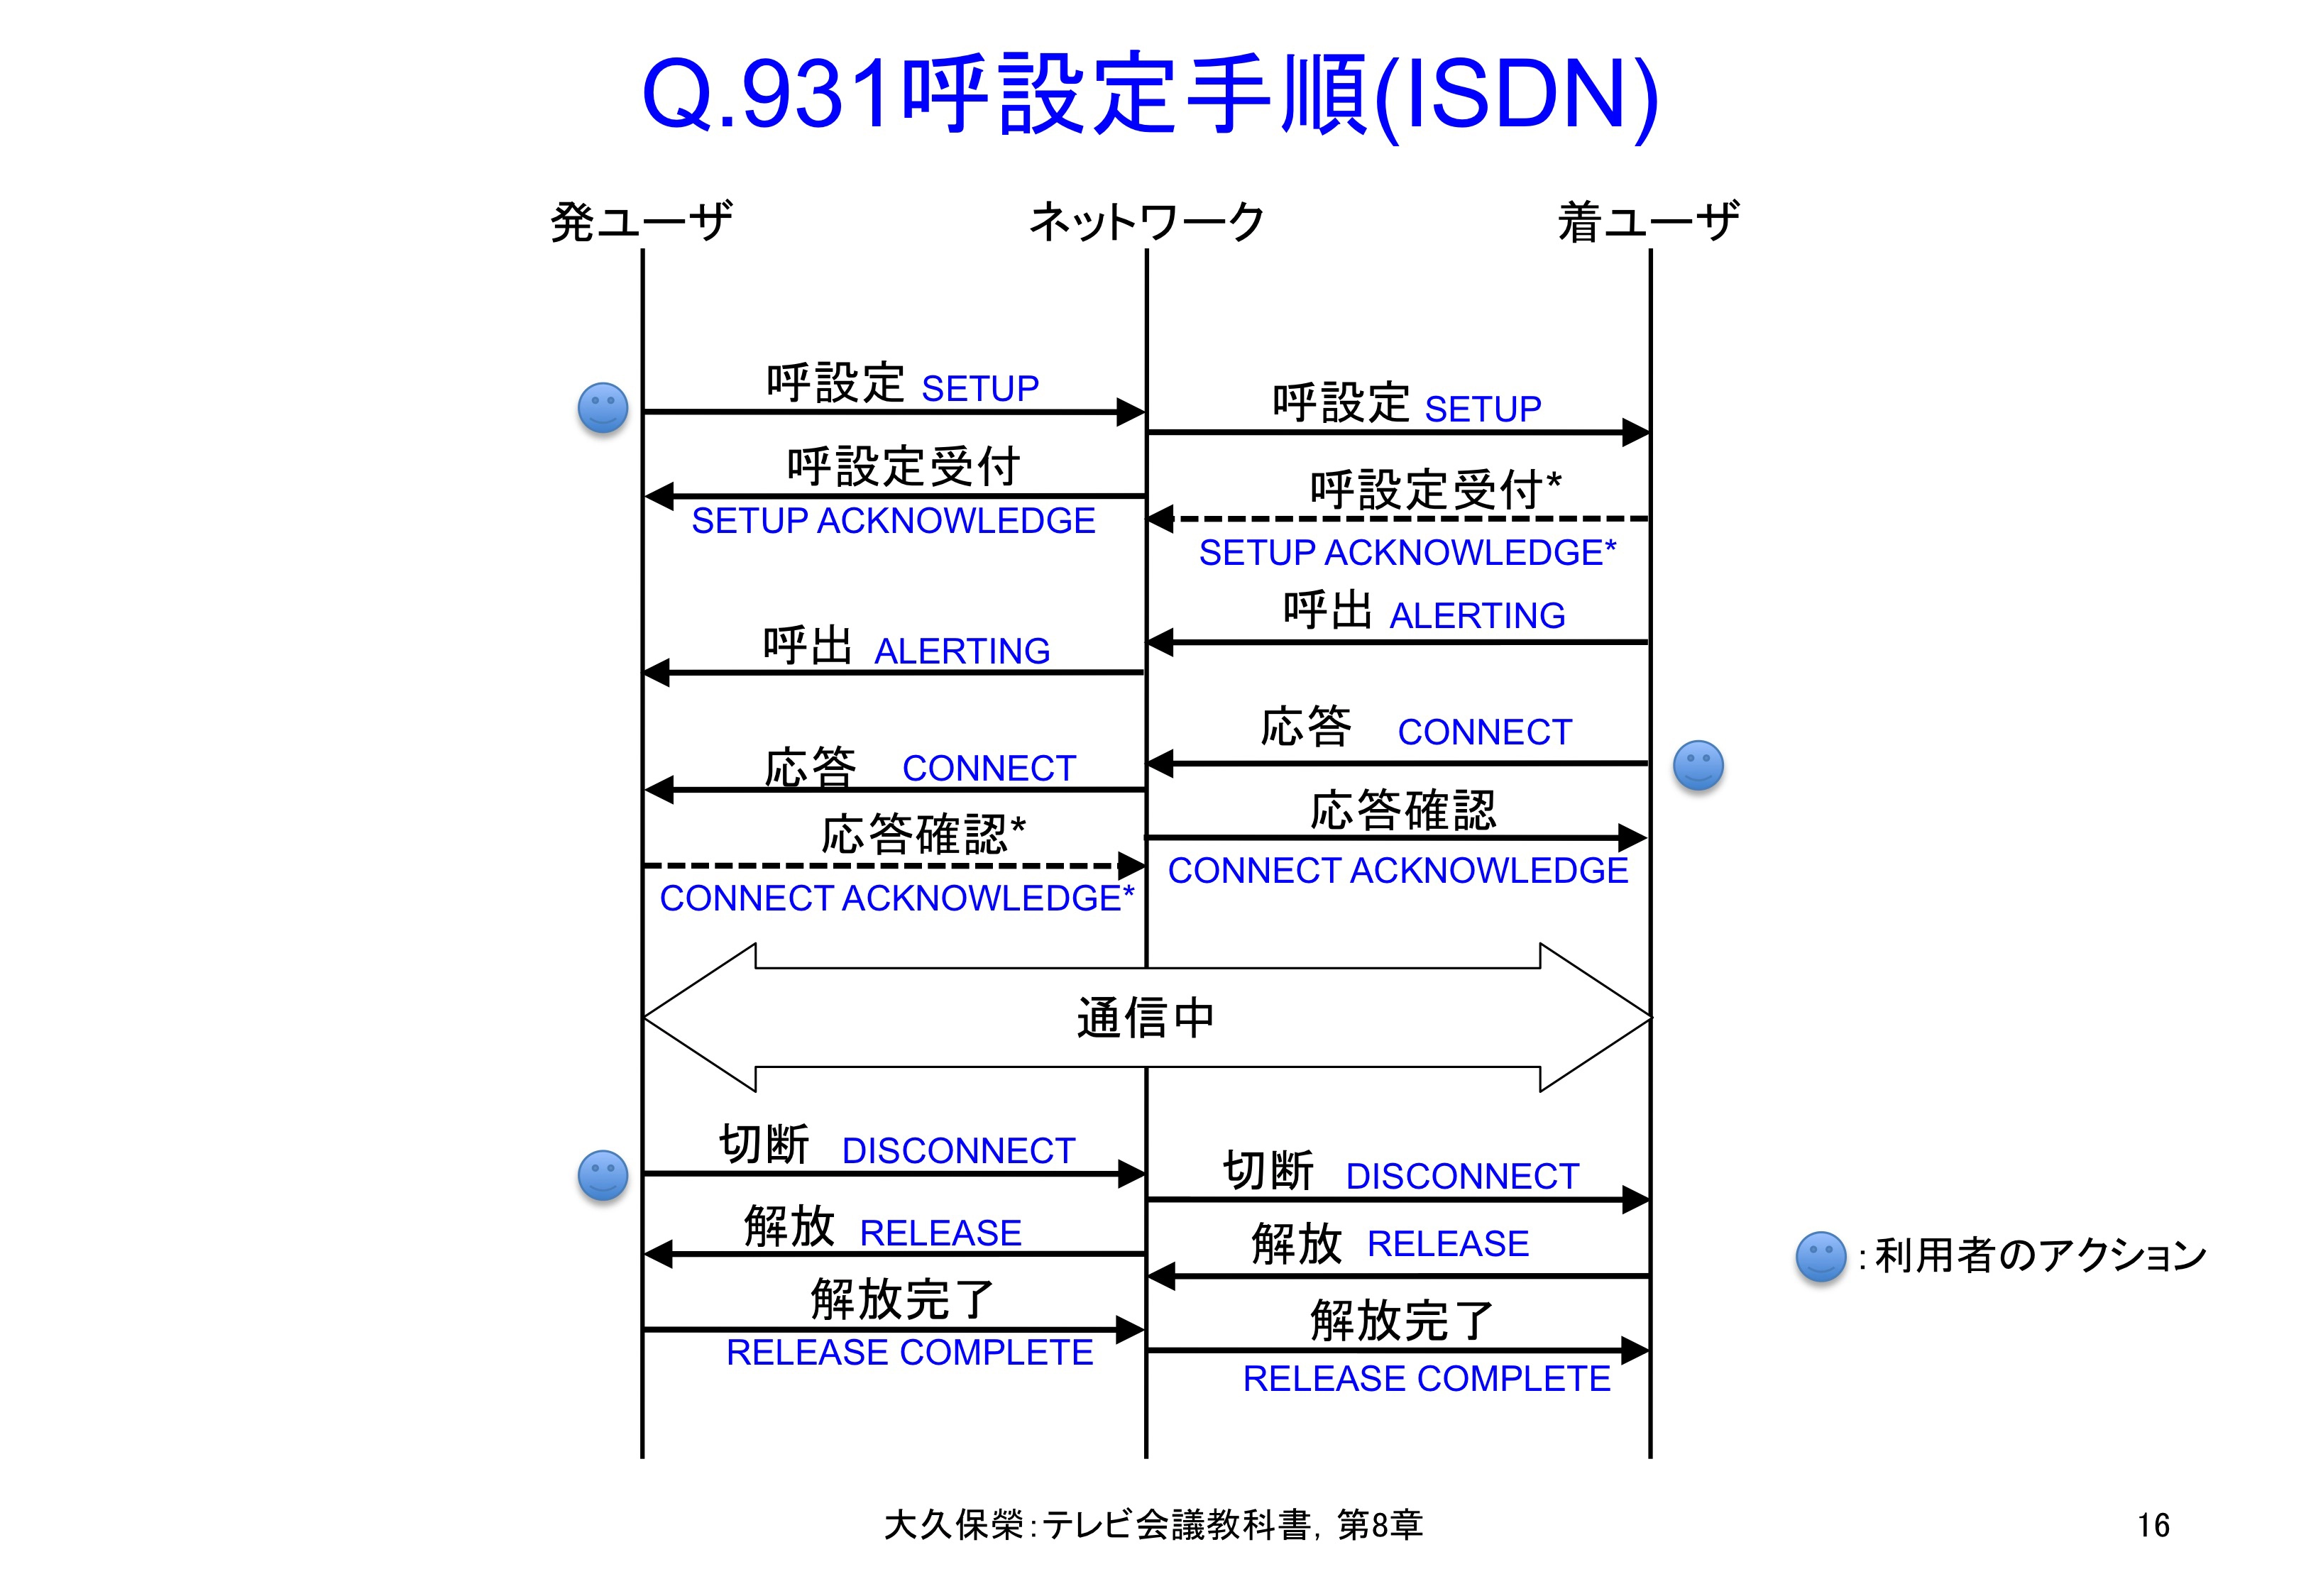 図8-16 Q.931呼設定手順(ISDN)